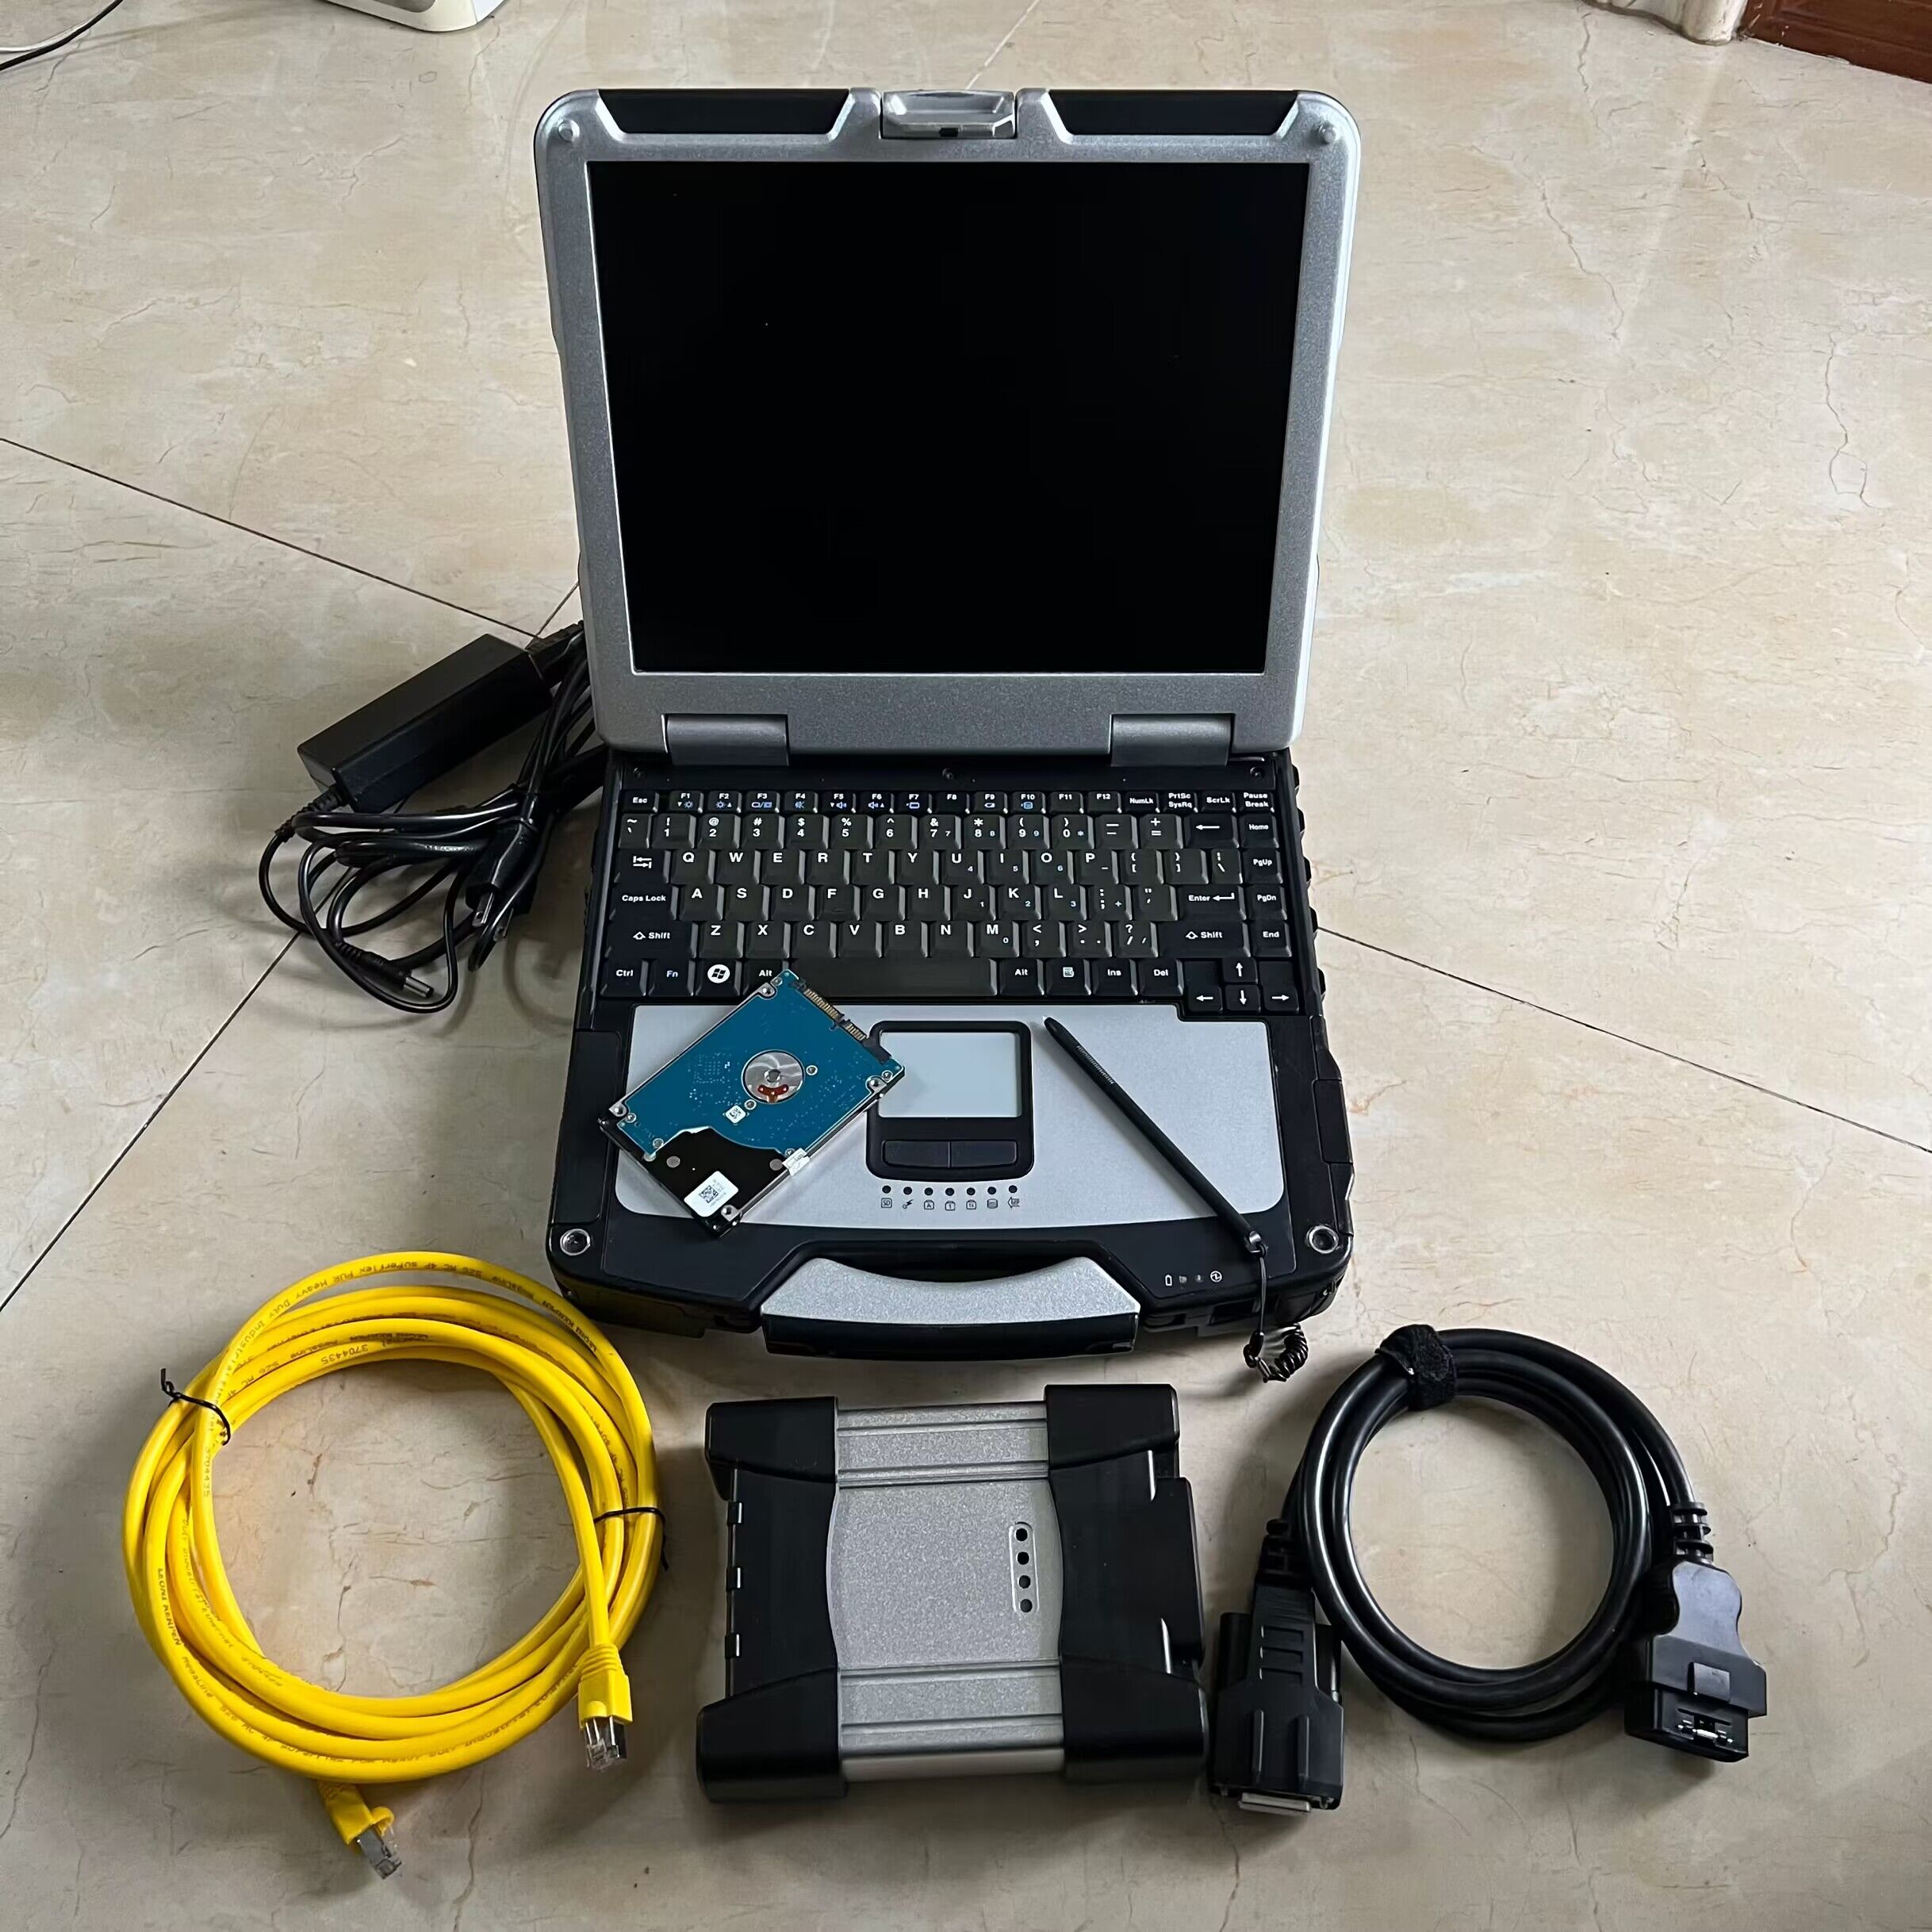 Para BMW ICOM Próximo A3 OBD Versão Testadores de Scanner de diagnóstico Plus Laptop CF-31 i5 4G Tela de toque Toughbook Ready Use Uso